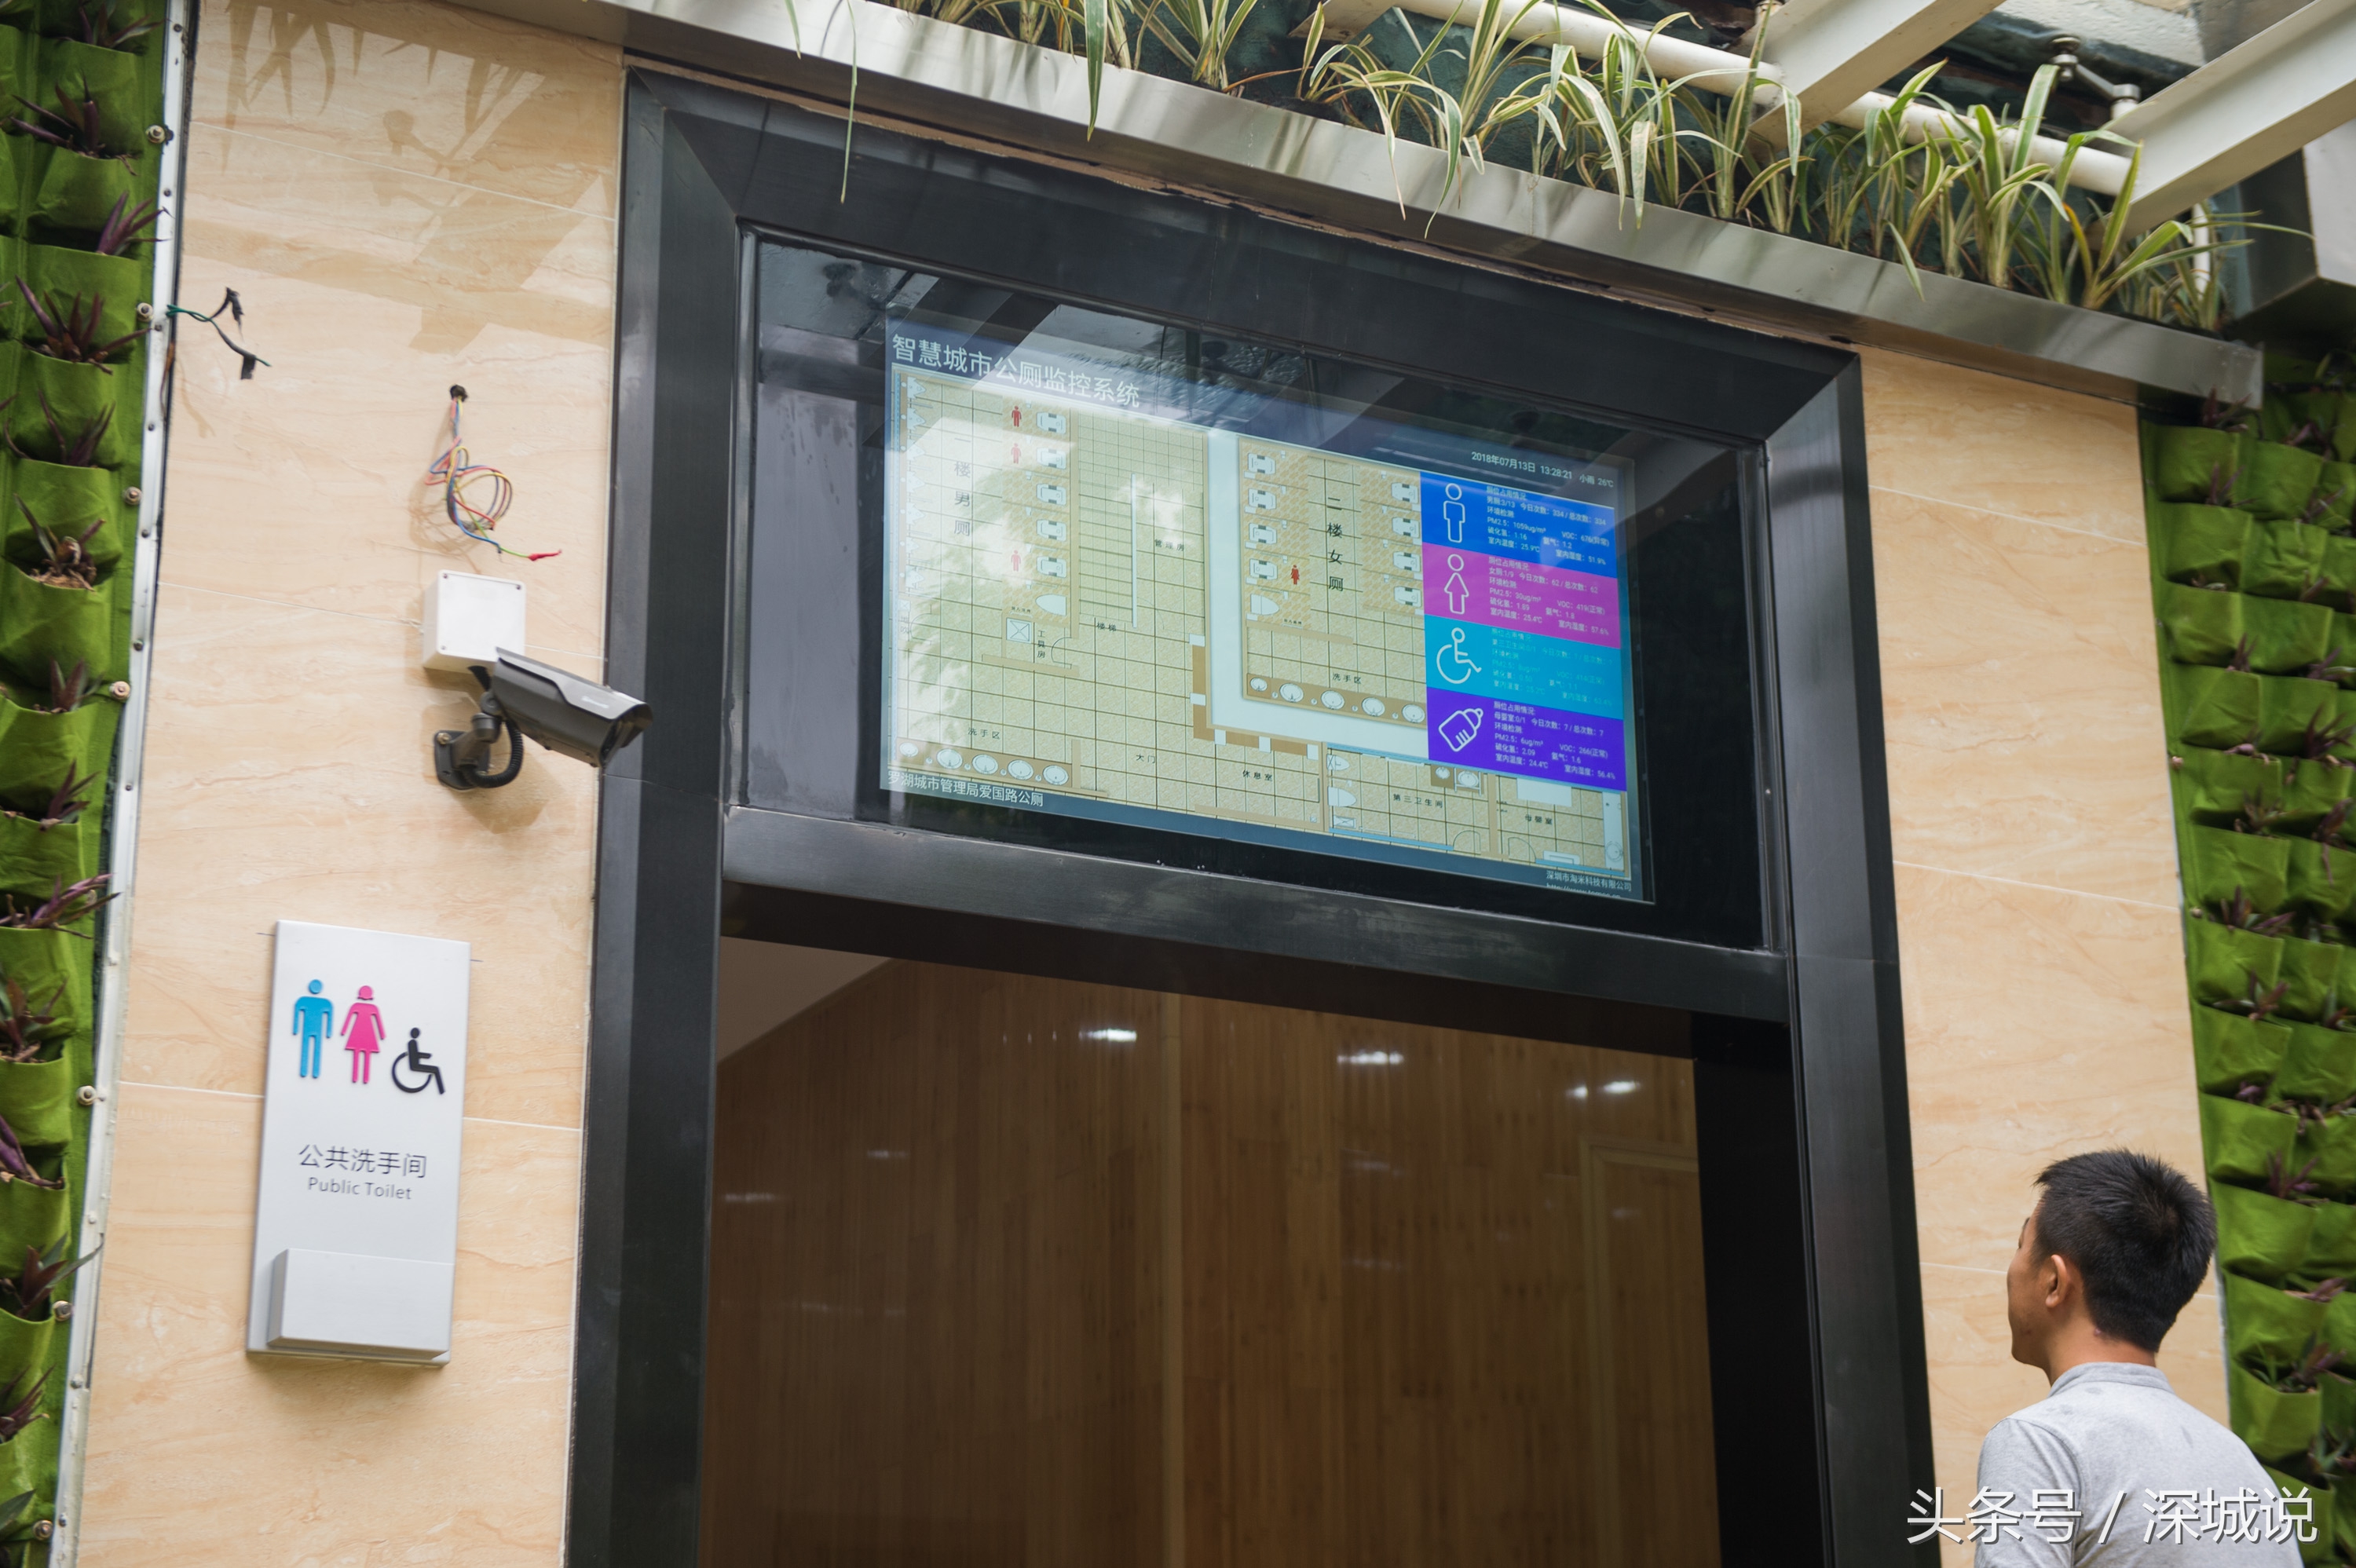 深圳首座智慧公厕,门口大屏幕显示厕所实况,臭不臭数据说了算